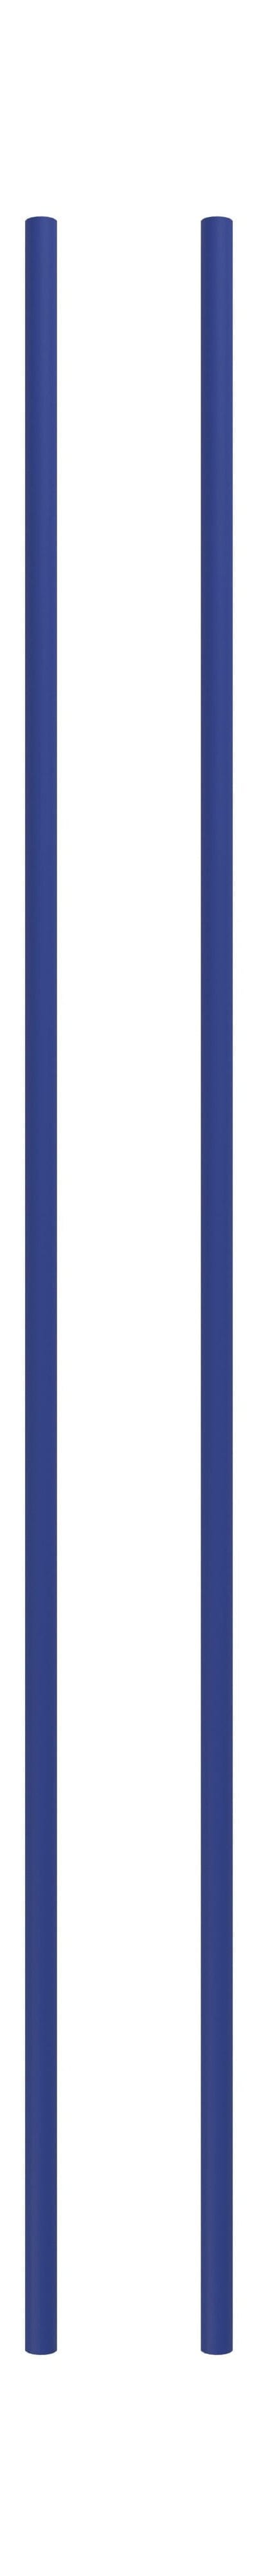 Moebe hyller system/vegghyller 115 cm dyp blå, sett med 2